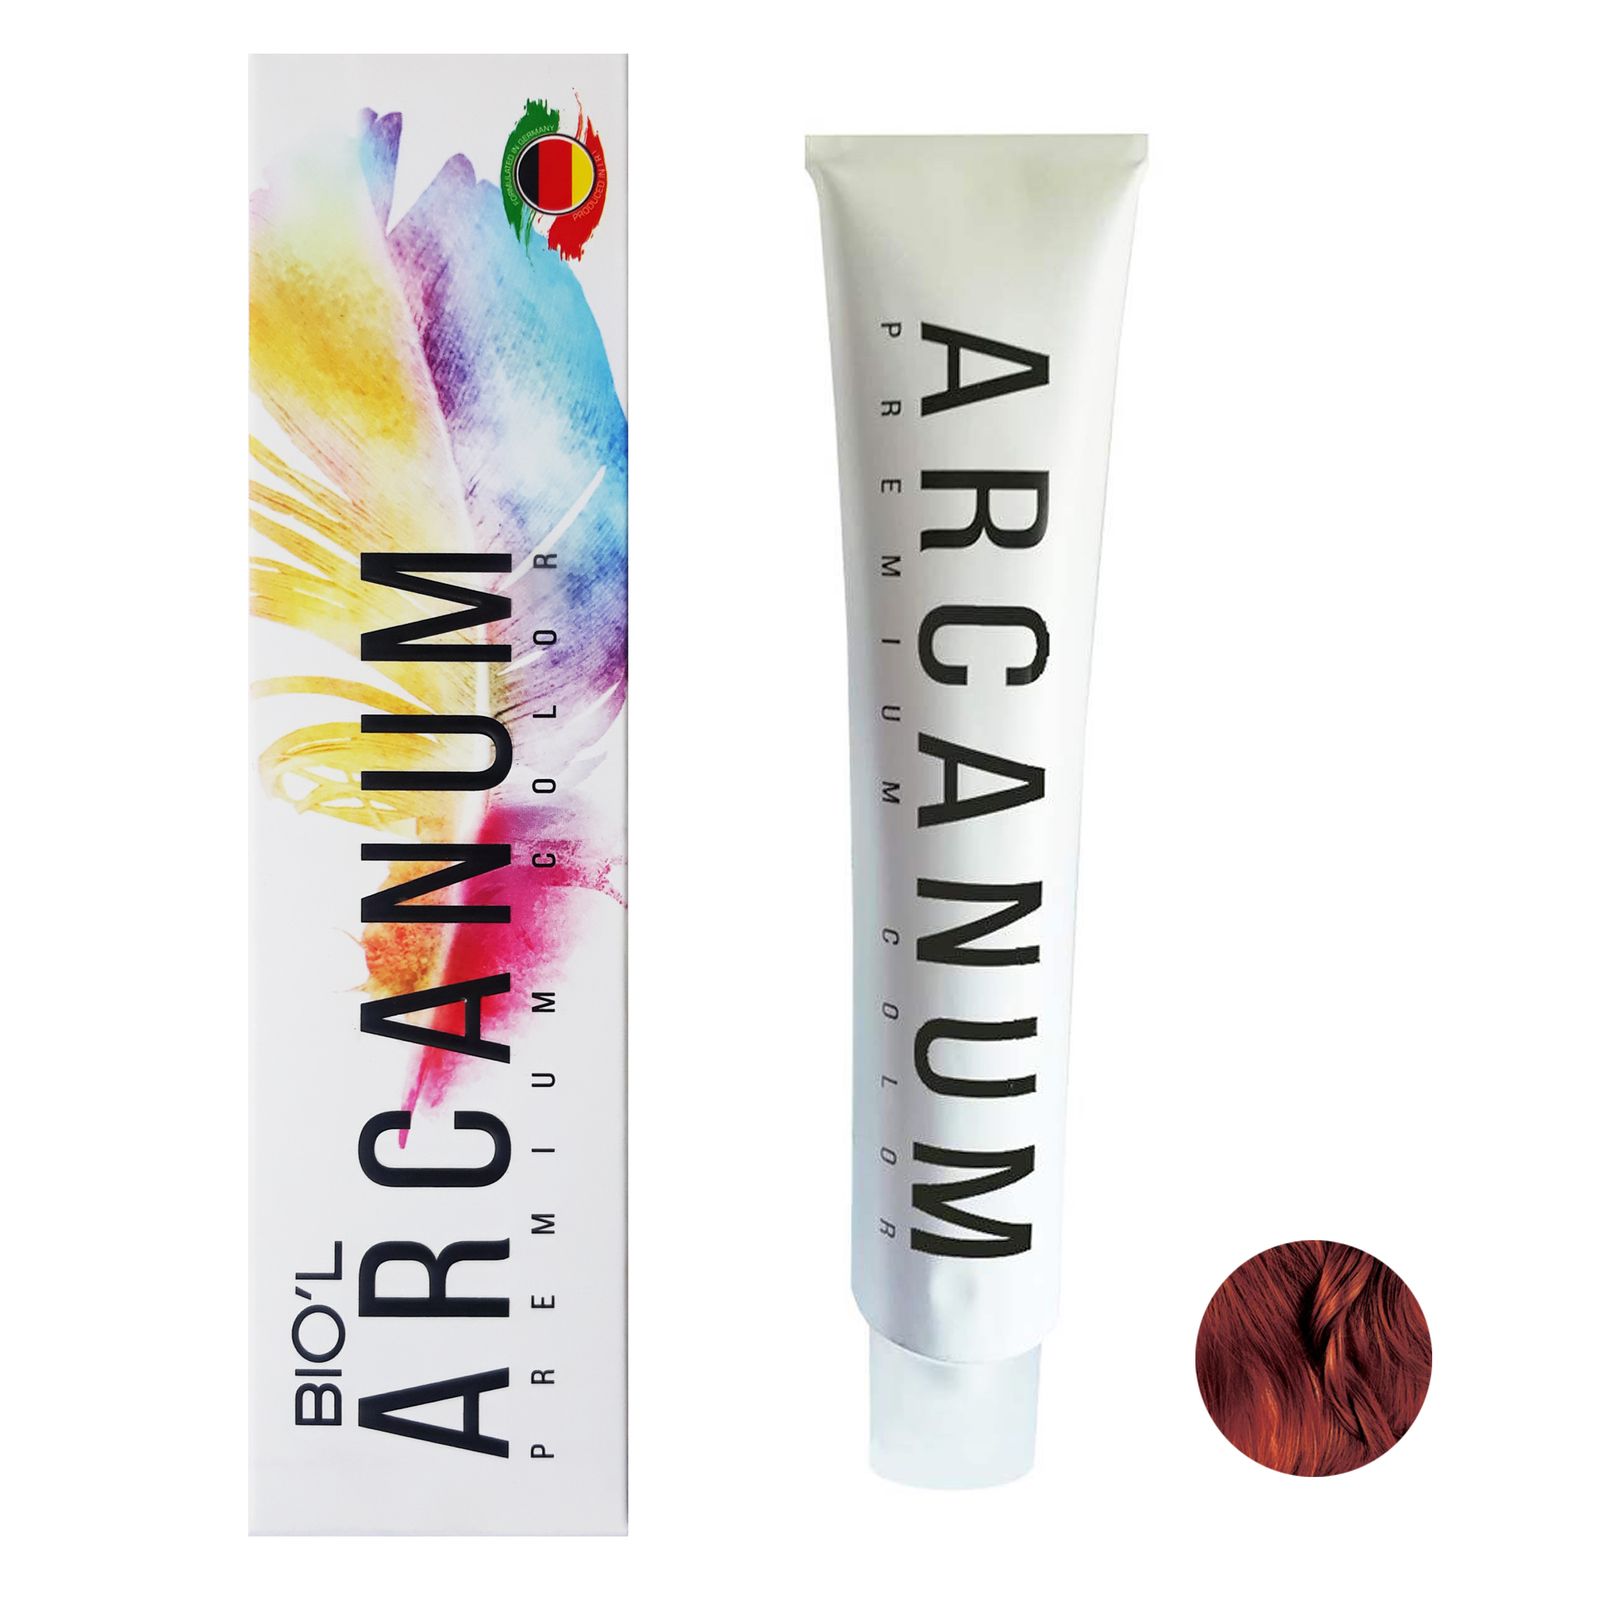  رنگ مو بیول مدل Arcanum شماره 5.85 حجم 120 میلی لیتر رنگ قهوه ای گوشتی روشن -  - 2